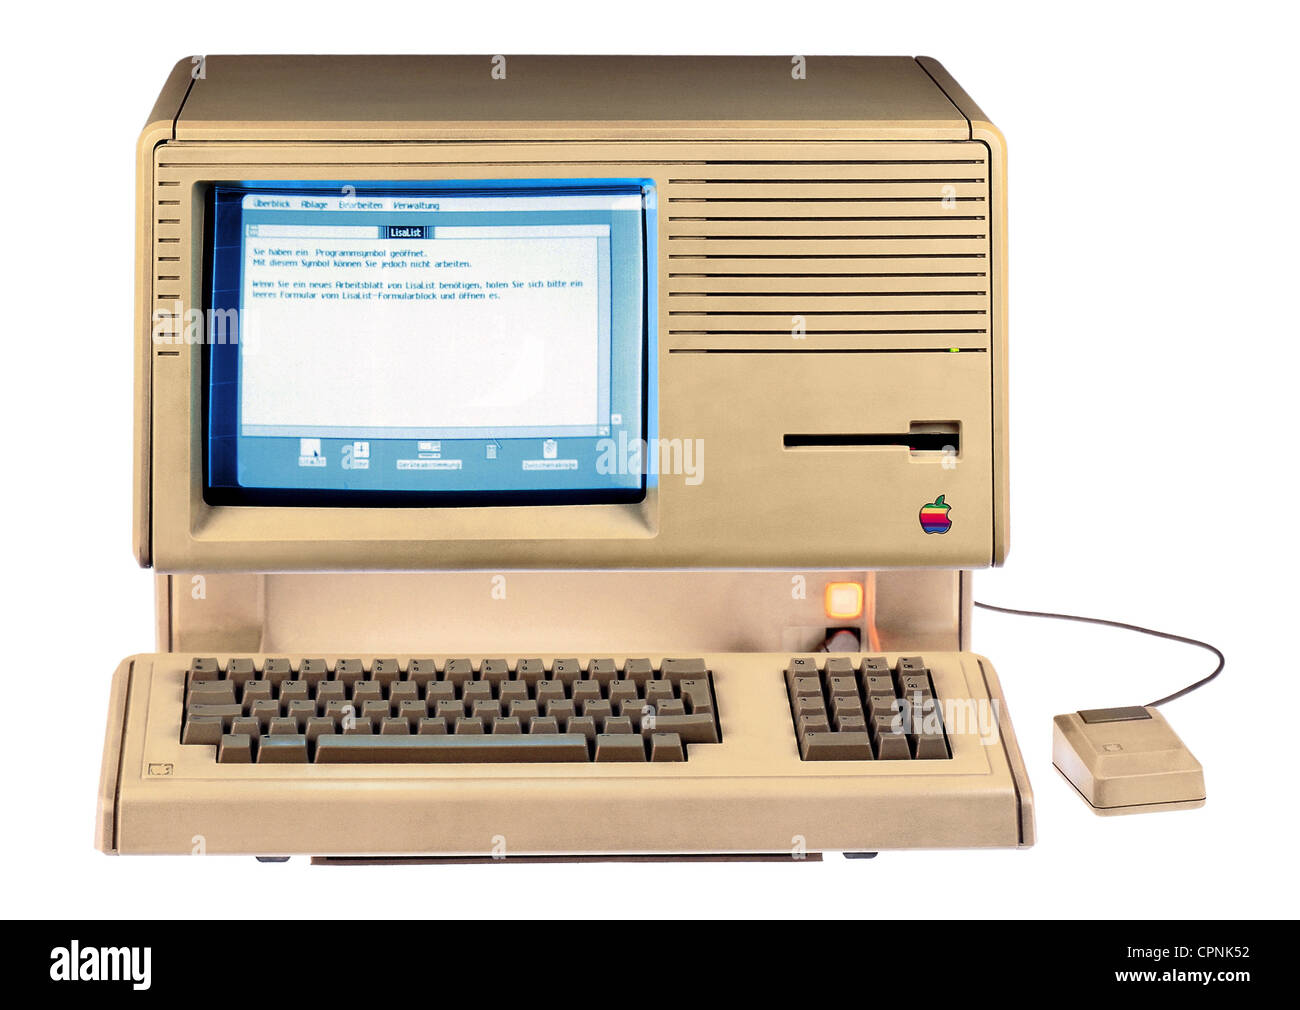 Computer / Elektronik, Computer, Apple Lisa, erster PC mit grafischer Benutzeroberfläche und Maus, erste benutzbare Computermaus, Prozessor: Motorola 68000, 5 MHz, 1 MB RAM, 2 MB ROM, 12 Zoll Display, integrierter Monitor, Computermonitor, Diskettenlaufwerk, Tastatur, Originalpreis 1983: 9.995 D, die Version Lisa als Business Flop für Apple bewies, wurde bis 1986 produziert, USA, United States of America, 1983, , Additional-Rights-Clearences-nicht verfügbar Stockfoto